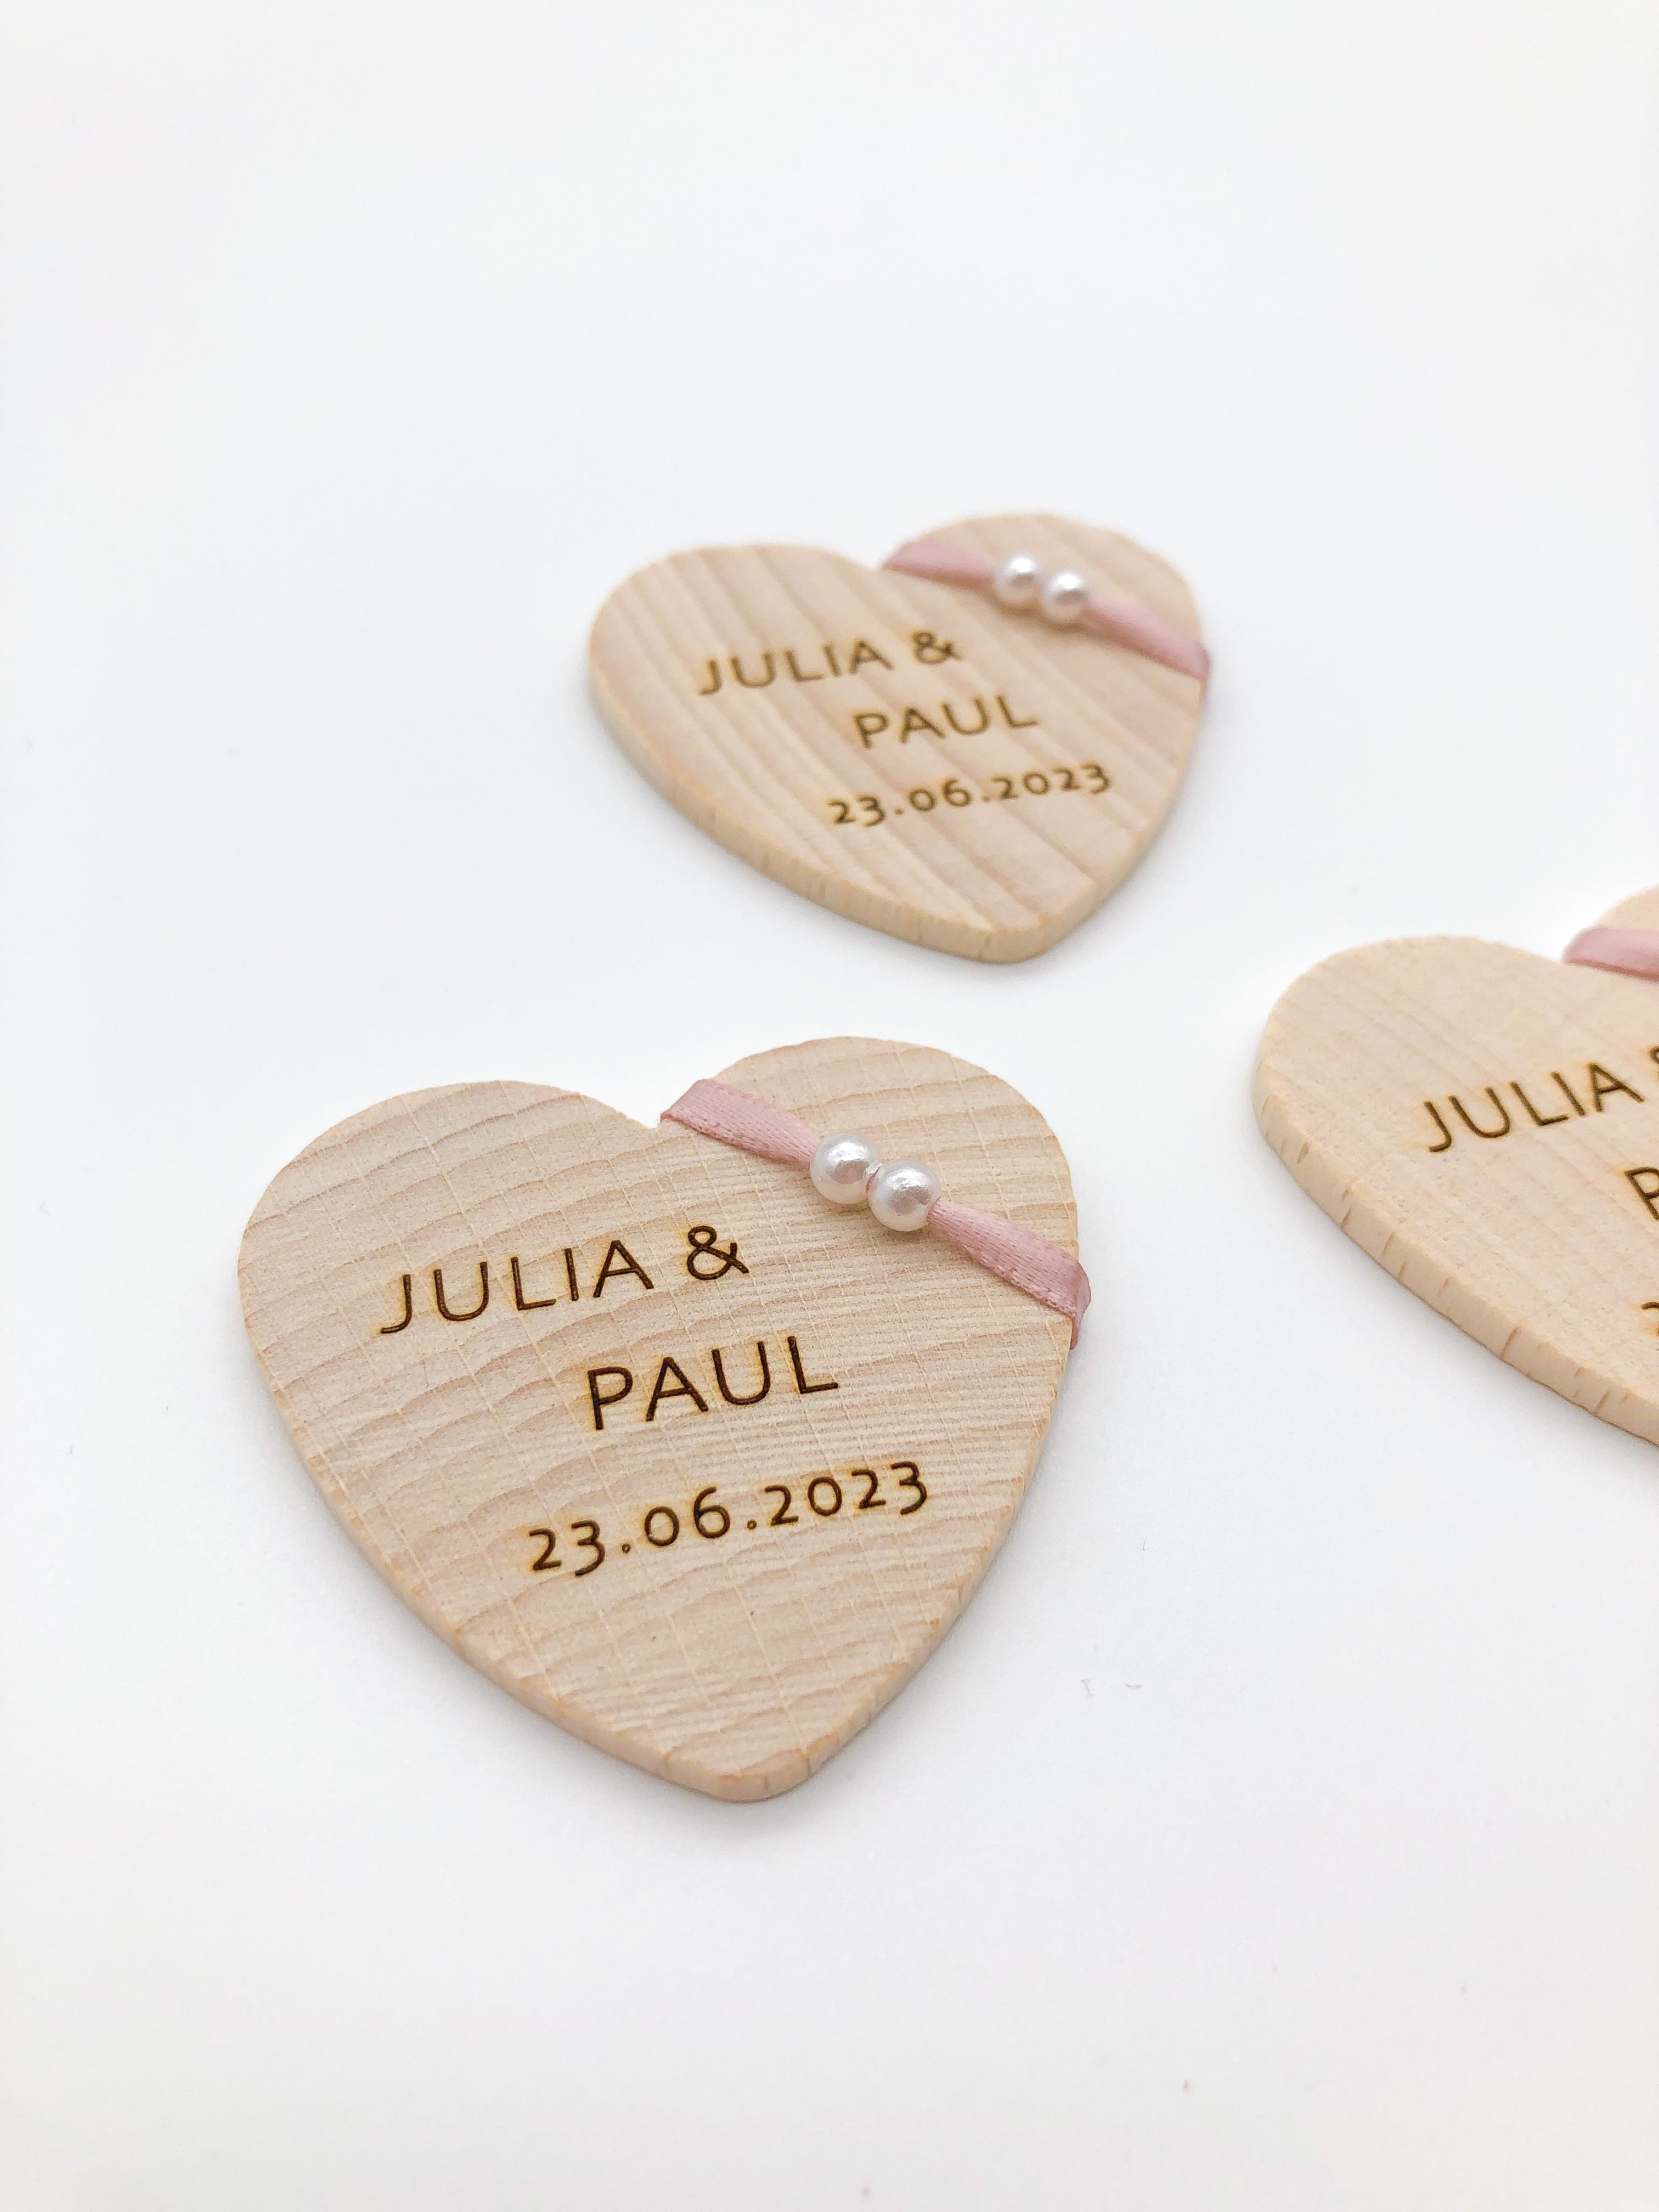 Anstecker Hochzeit Gäste aus Holz Herzform personalisiert mit Band blush rosé und weißen Perlen